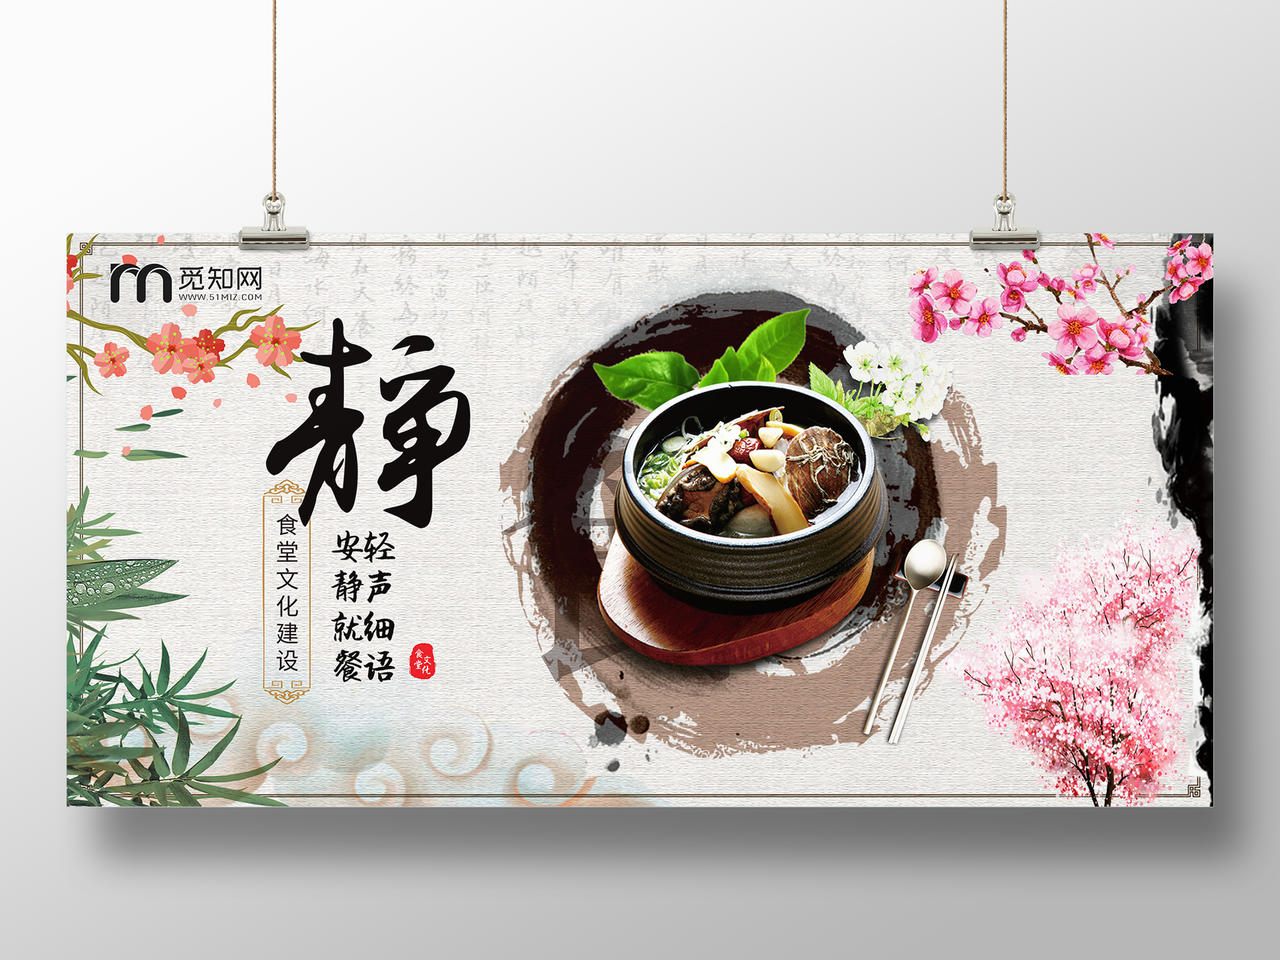 安静就餐轻声细语中华传统美德学校食堂文化海报